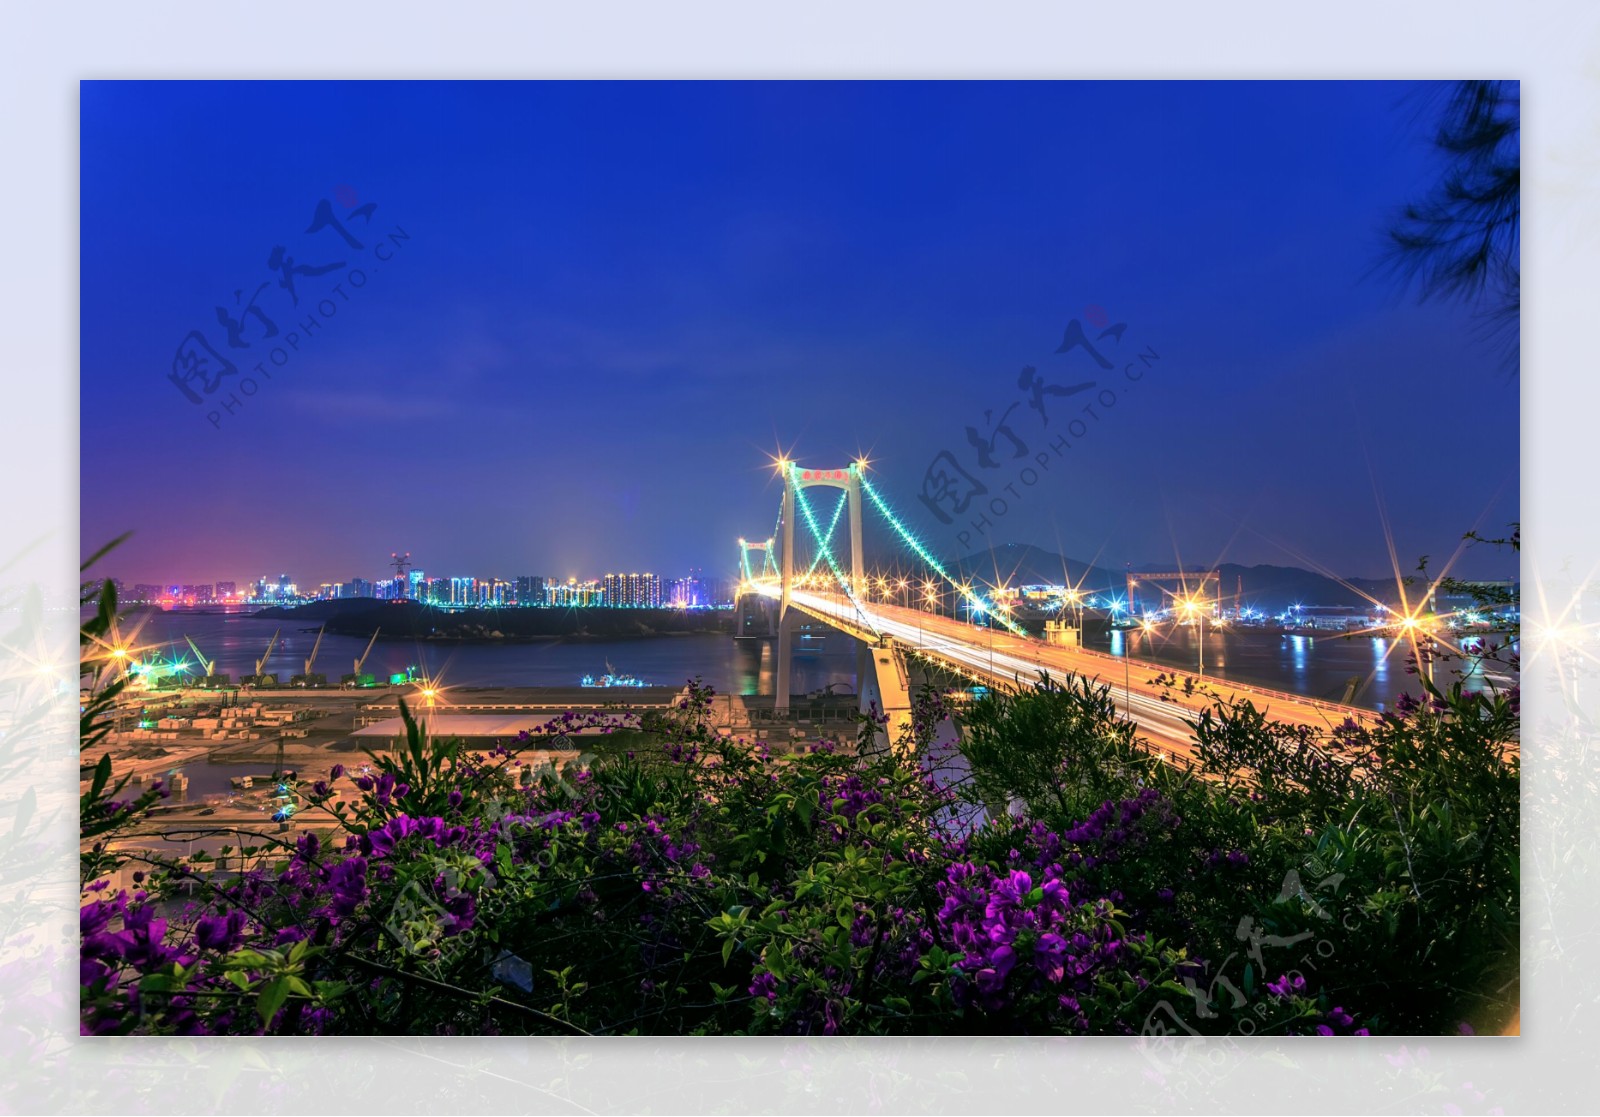 厦门海沧大桥图片